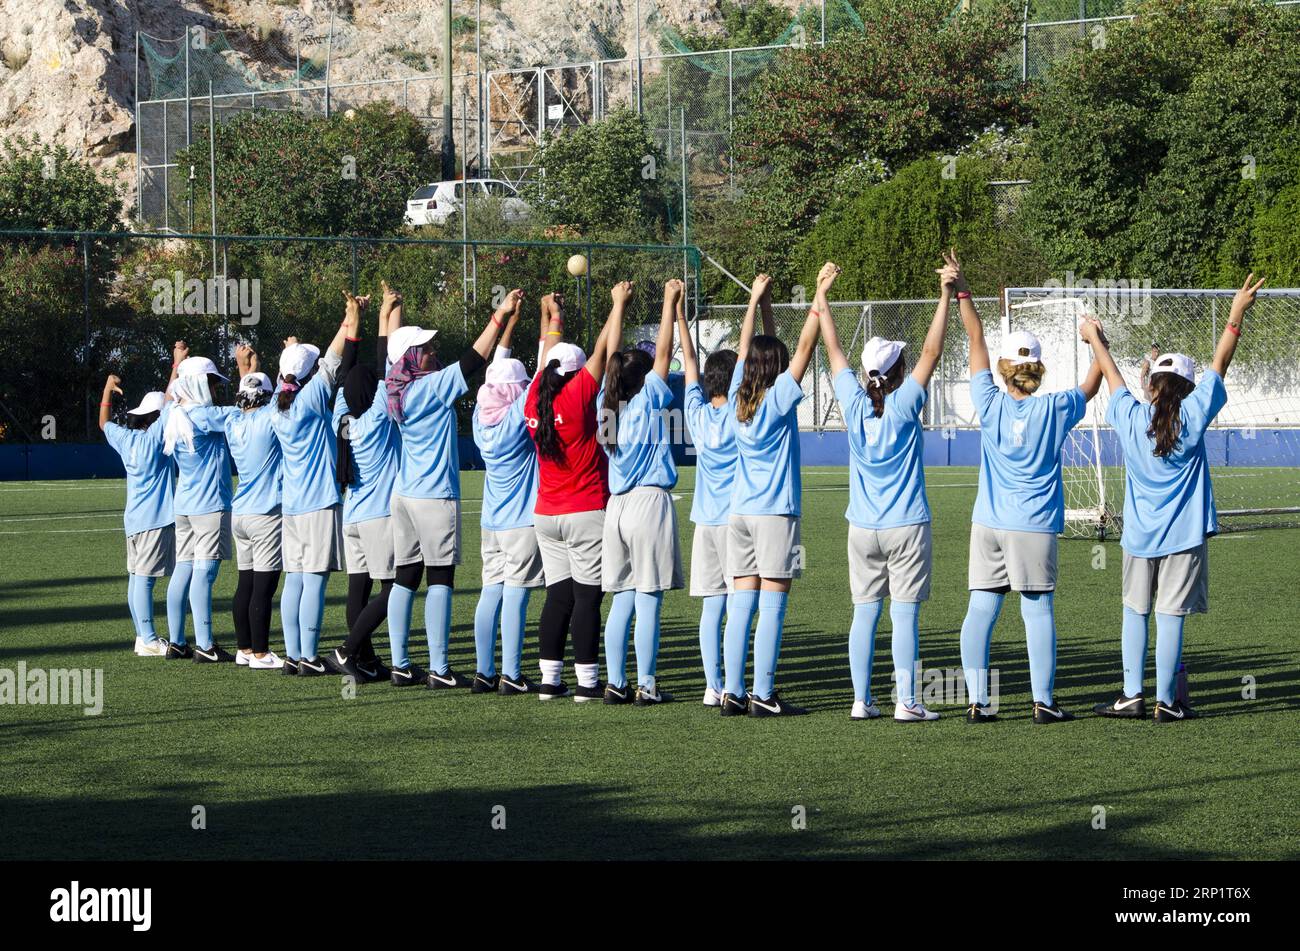 (180723) -- ATHEN, 23. Juli 2018 () -- Foto vom 13. Juli zeigt Flüchtlingskinder, die in einem Sommerfußballcamp in der Nähe von Athen Fußball spielen. Ein Sommerfußballprogramm für unbegleitete Kinder im Alter von 12 bis 17 Jahren, die derzeit in Unterkünften in Athen untergebracht sind, soll den Weg für eine stärkere Integration zwischen Flüchtlingen und Gastgemeinschaften durch Sport ebnen. ()(gj) GRIECHENLAND-ATHEN-SOMMERFUSSBALLCAMP-FLÜCHTLING Xinhua PUBLICATIONxNOTxINxCHN Stockfoto